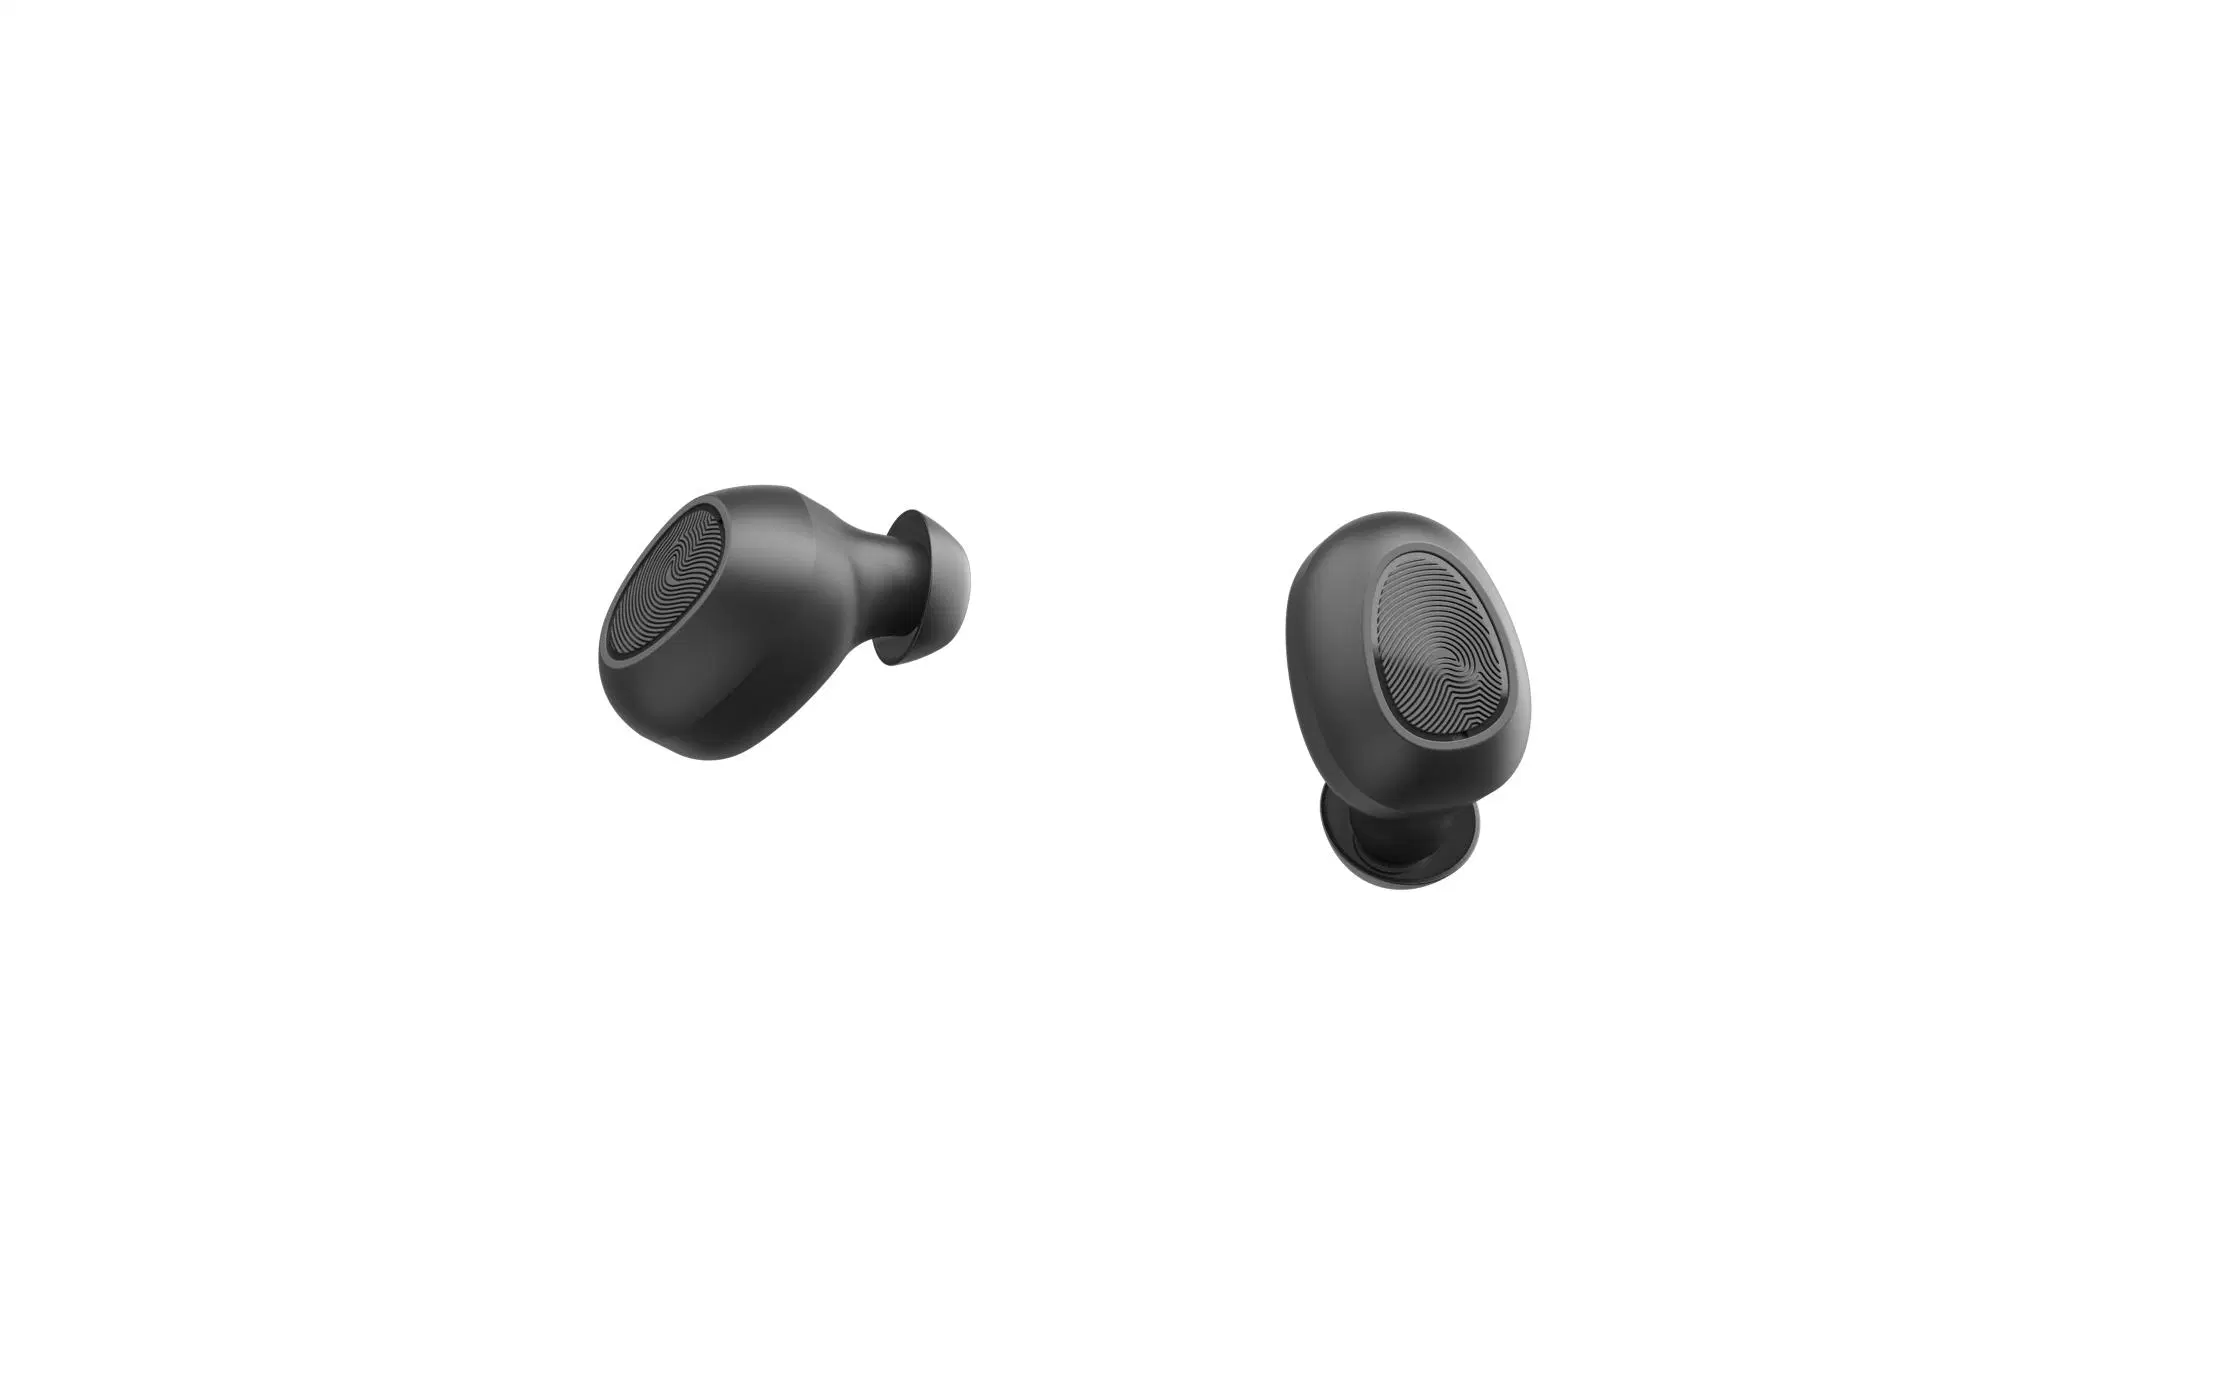 T10jl Support OEM/ODM True Wirelessgaming Earphone Tws Earbuds True Wireless Bluetooth Headset